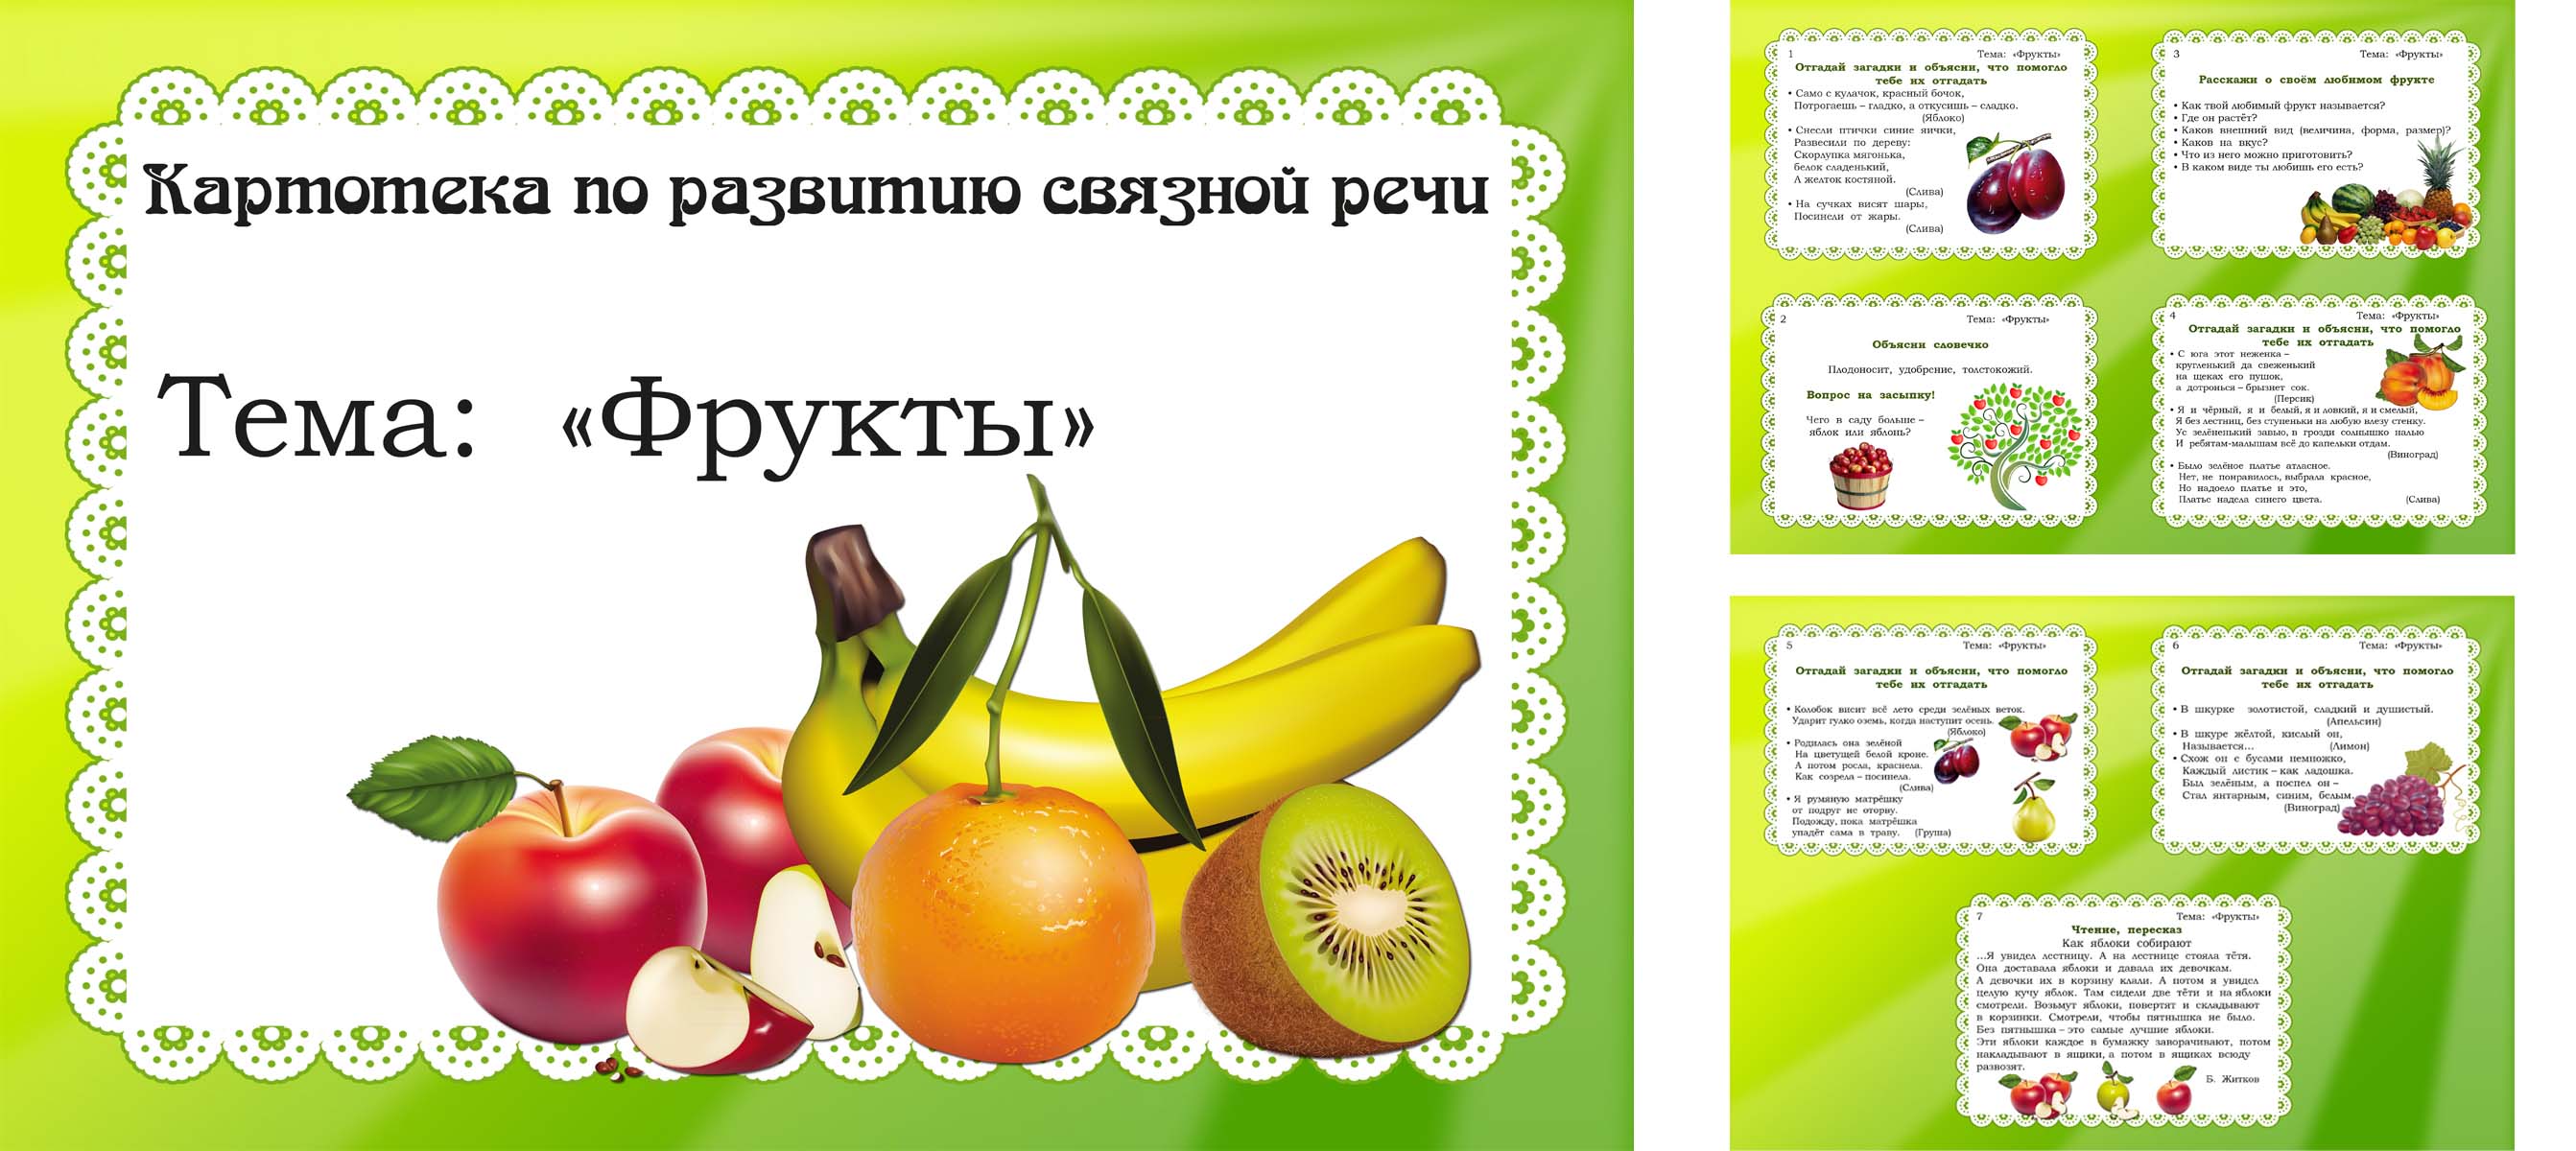 Картотека Связной речи тема фрукты